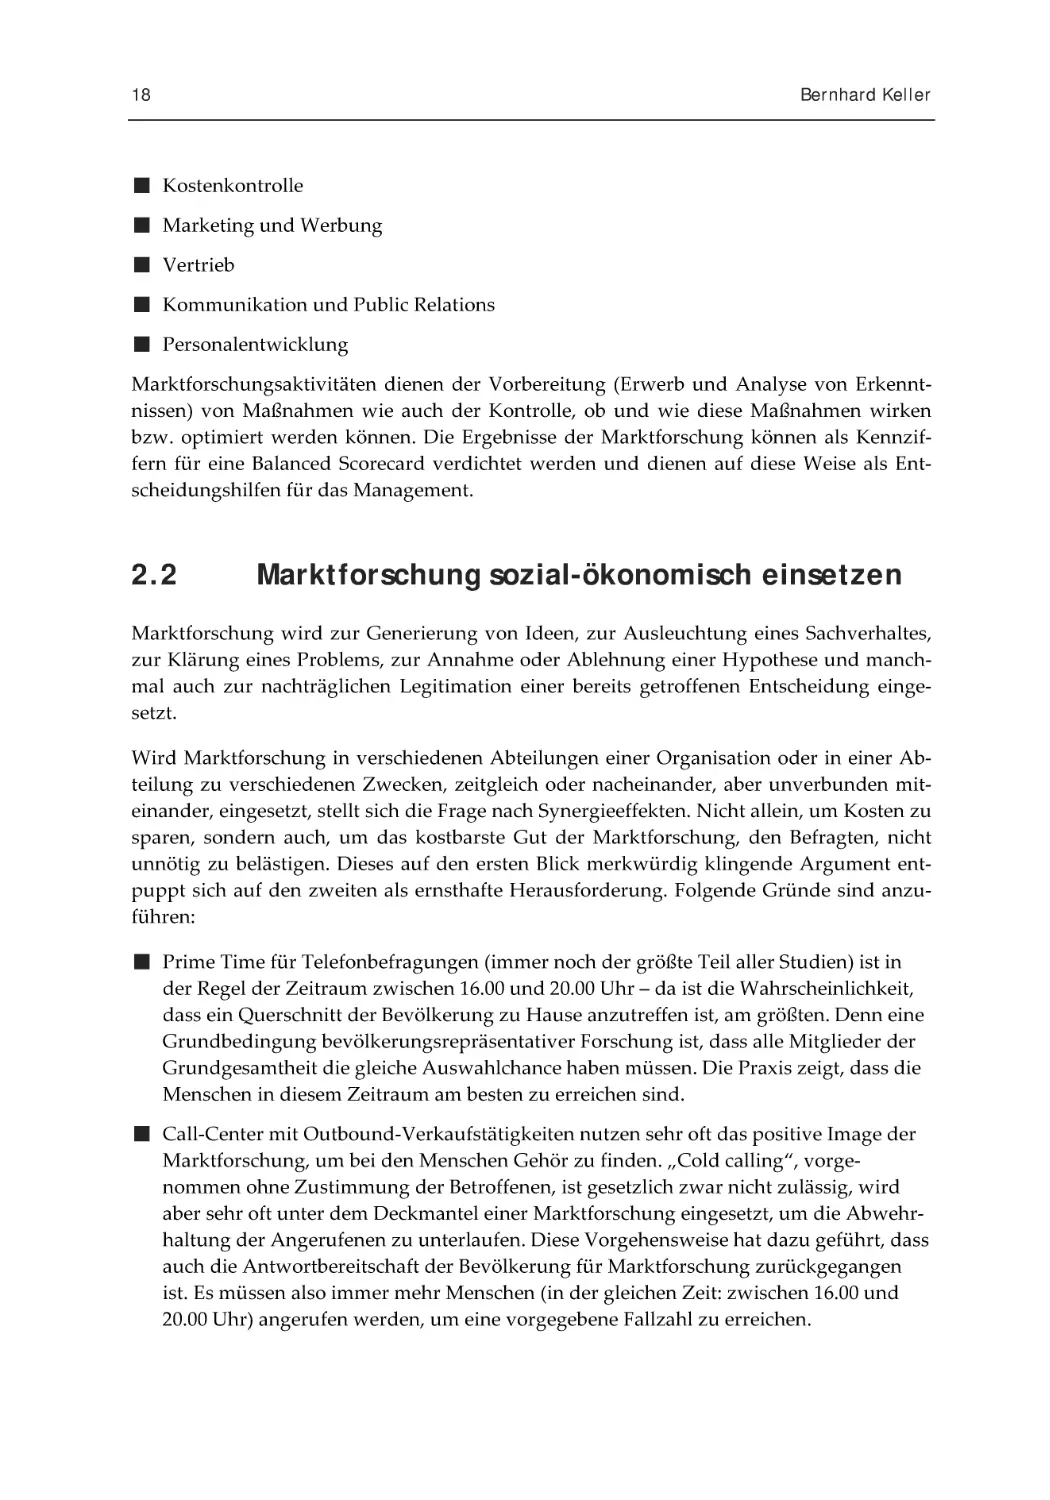 2.2 Marktforschung sozial-ökonomisch einsetzen